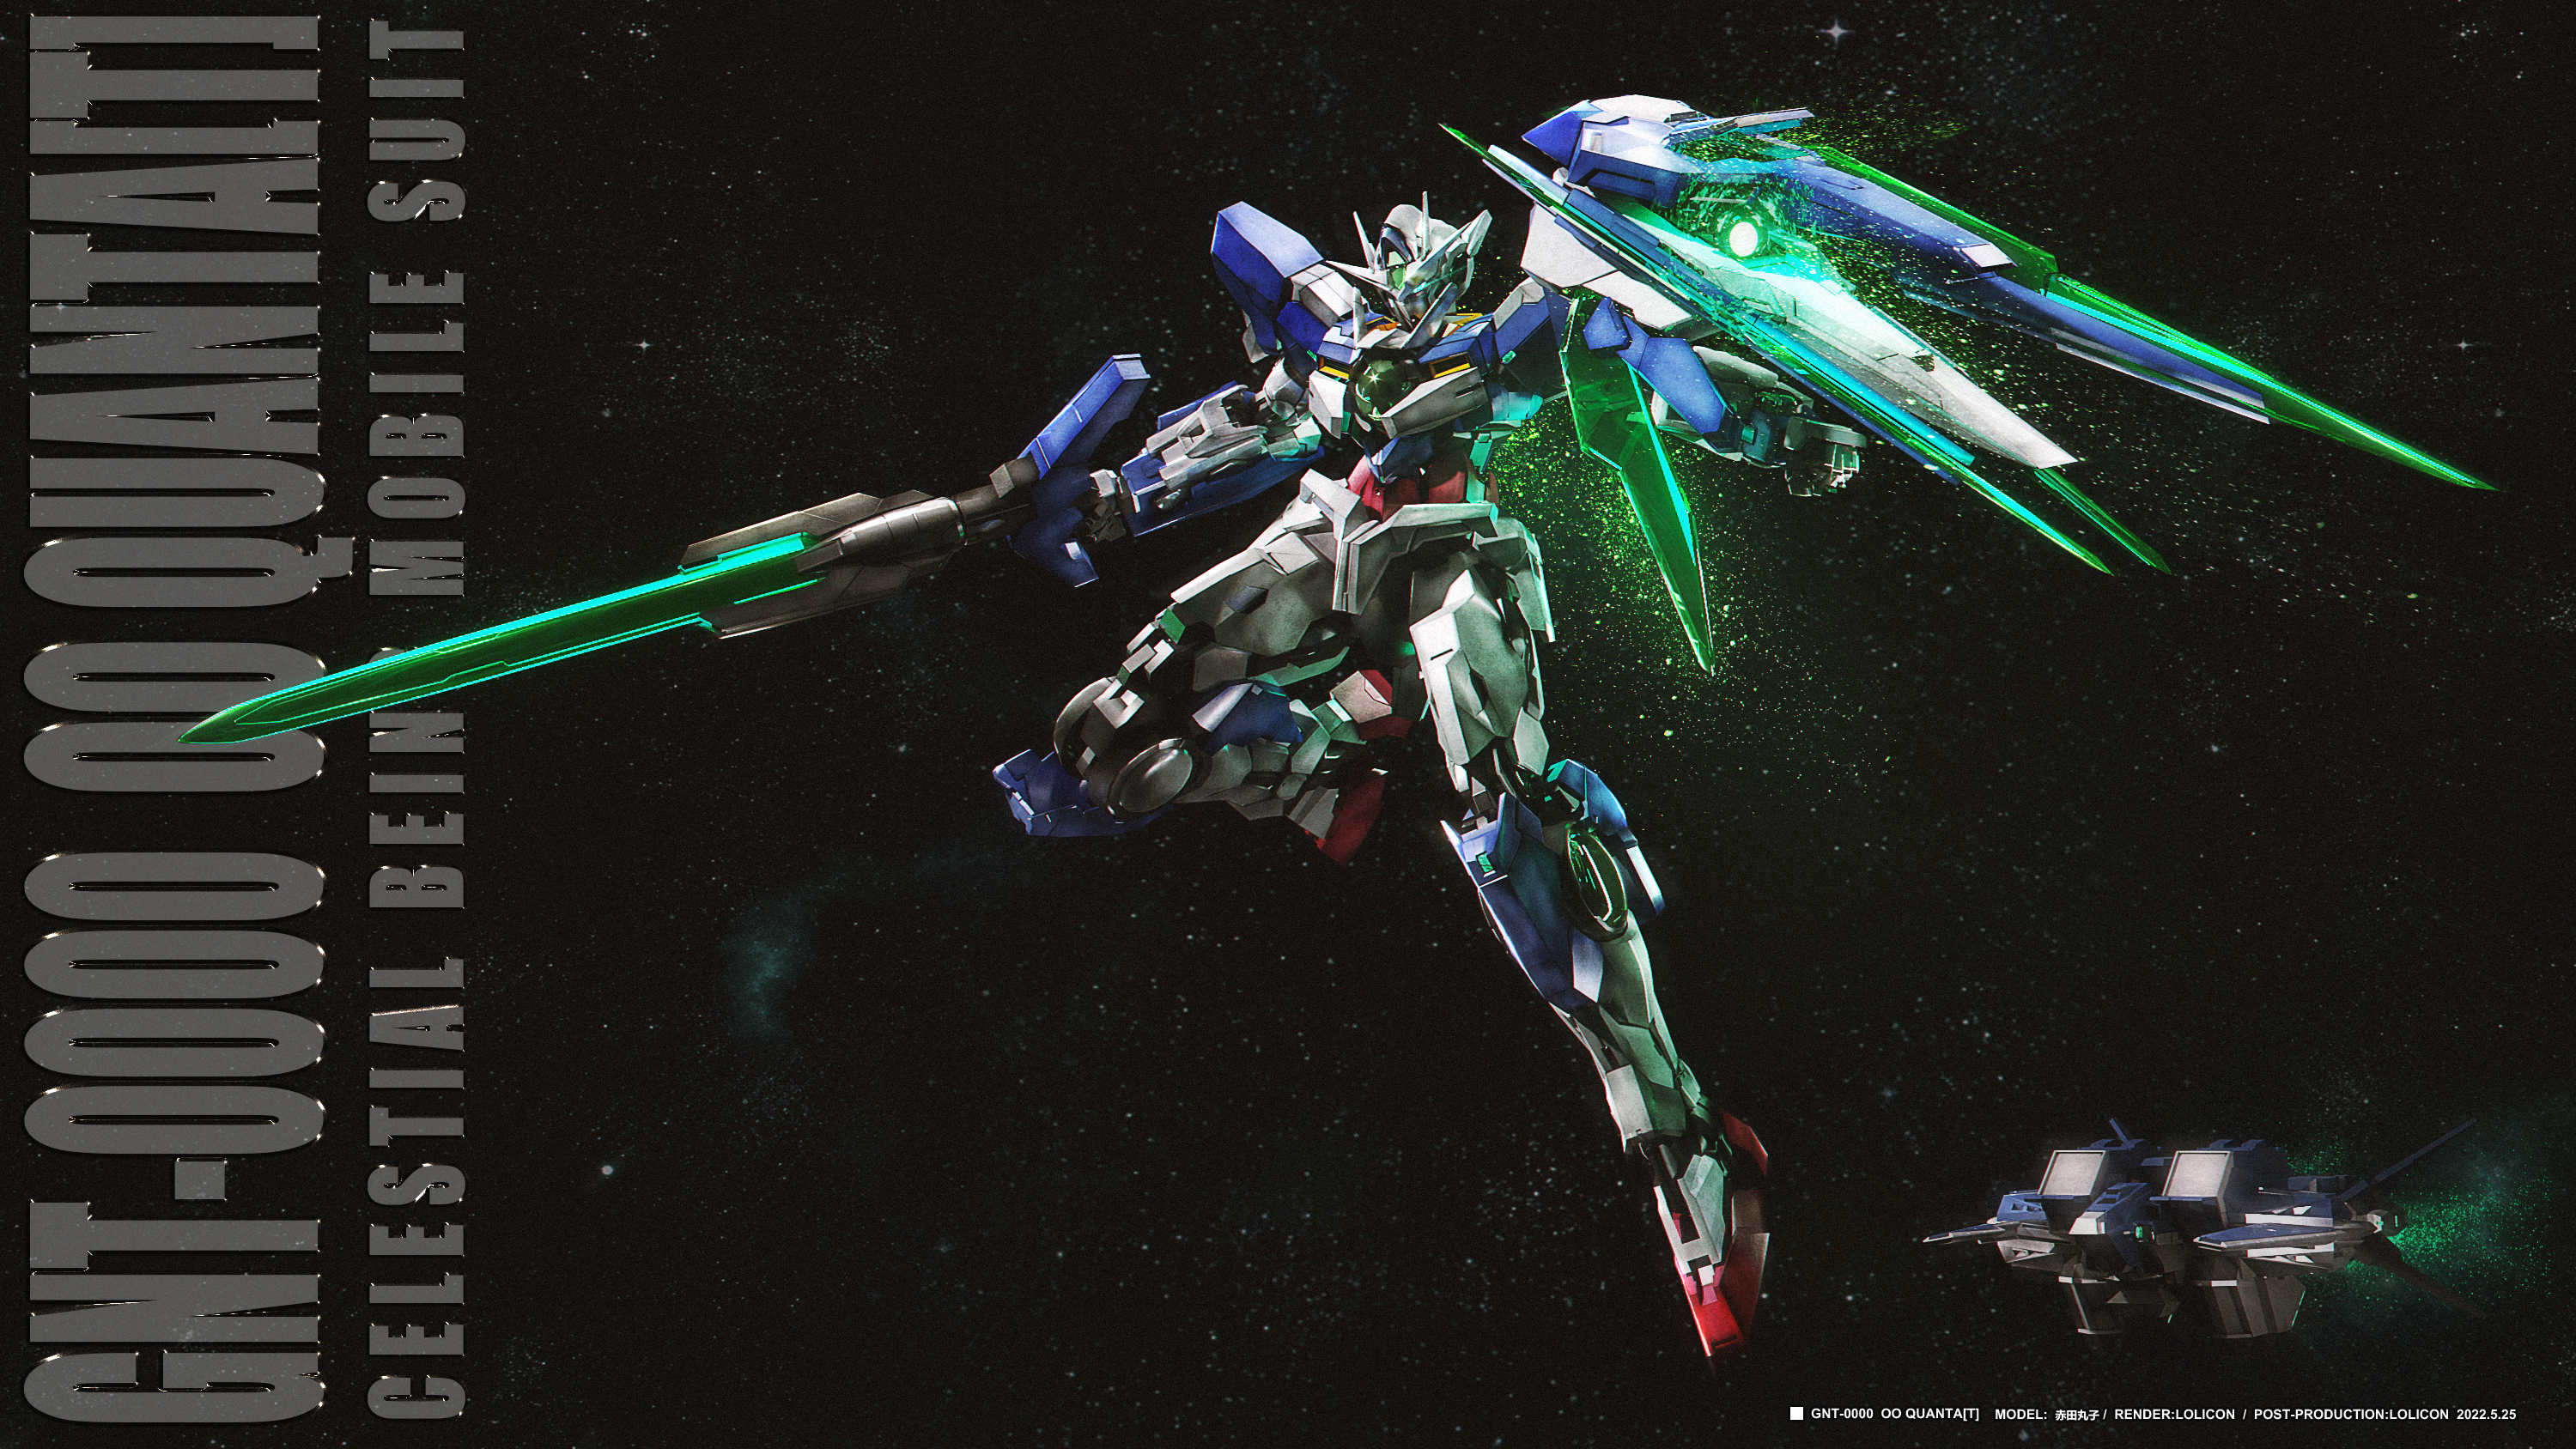 Anime 3000x1688 anime mechs Super Robot Taisen Gundam Mobile Suit Gundam 00 00 Qan[T] artwork digital art fan art